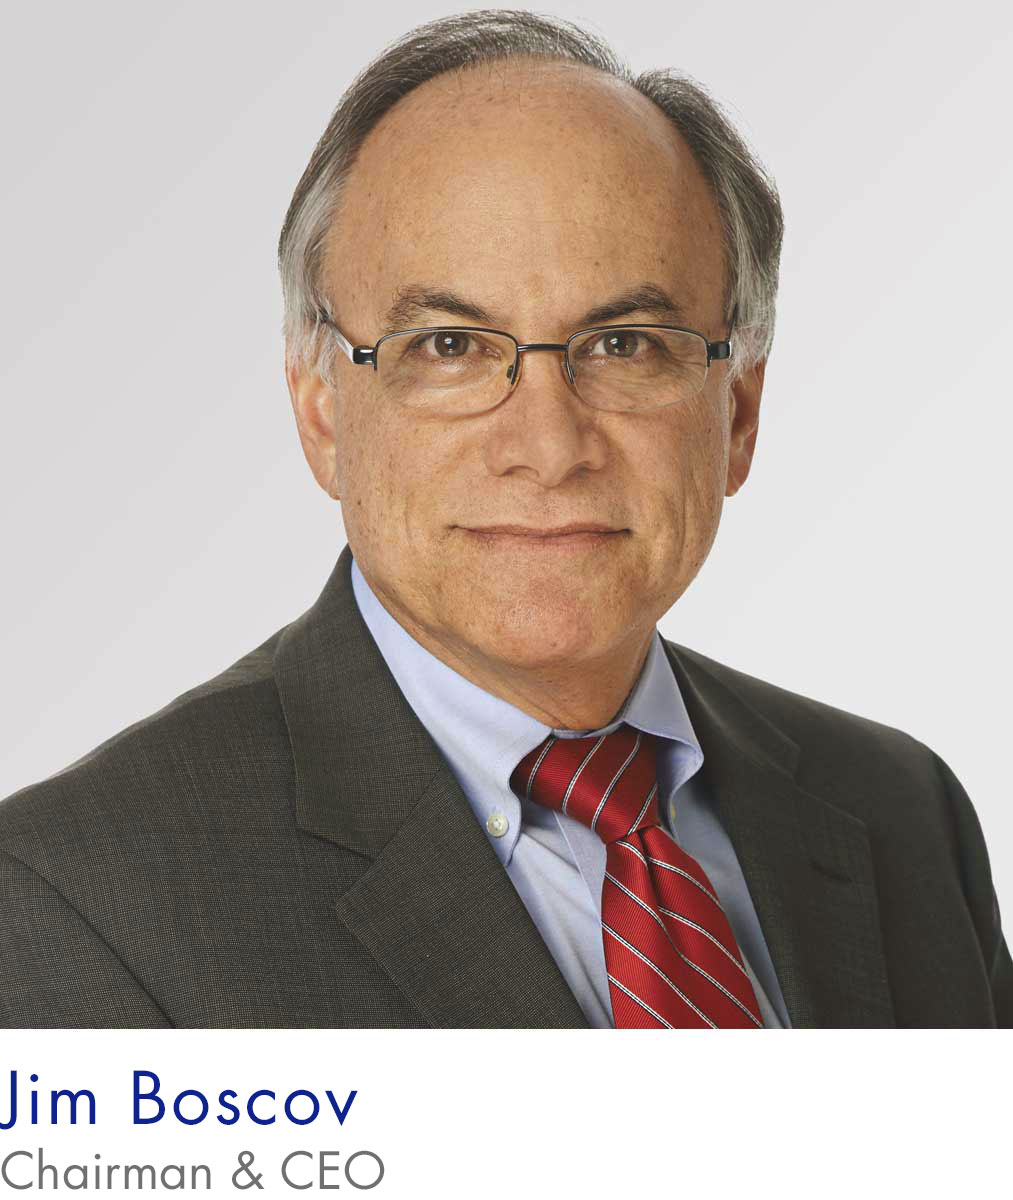 Jim Boscov's CEO